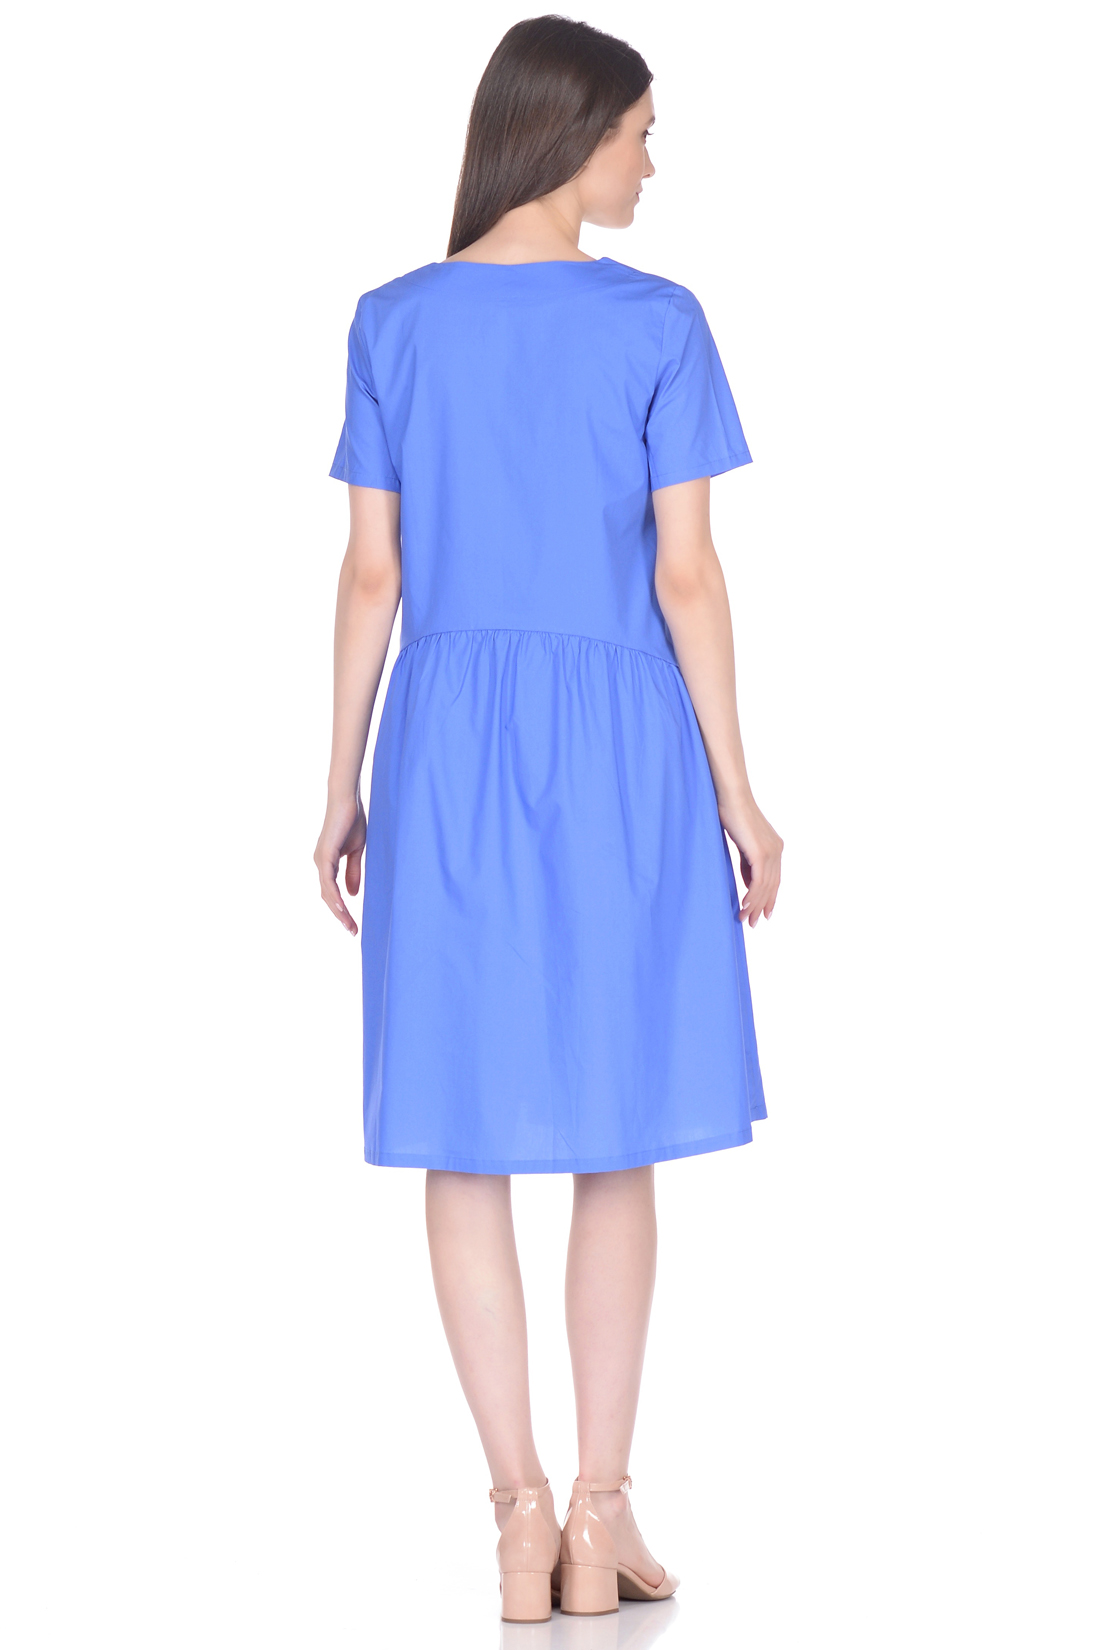 Свободное платье из хлопка (арт. baon B458061), размер XL, цвет синий Свободное платье из хлопка (арт. baon B458061) - фото 2